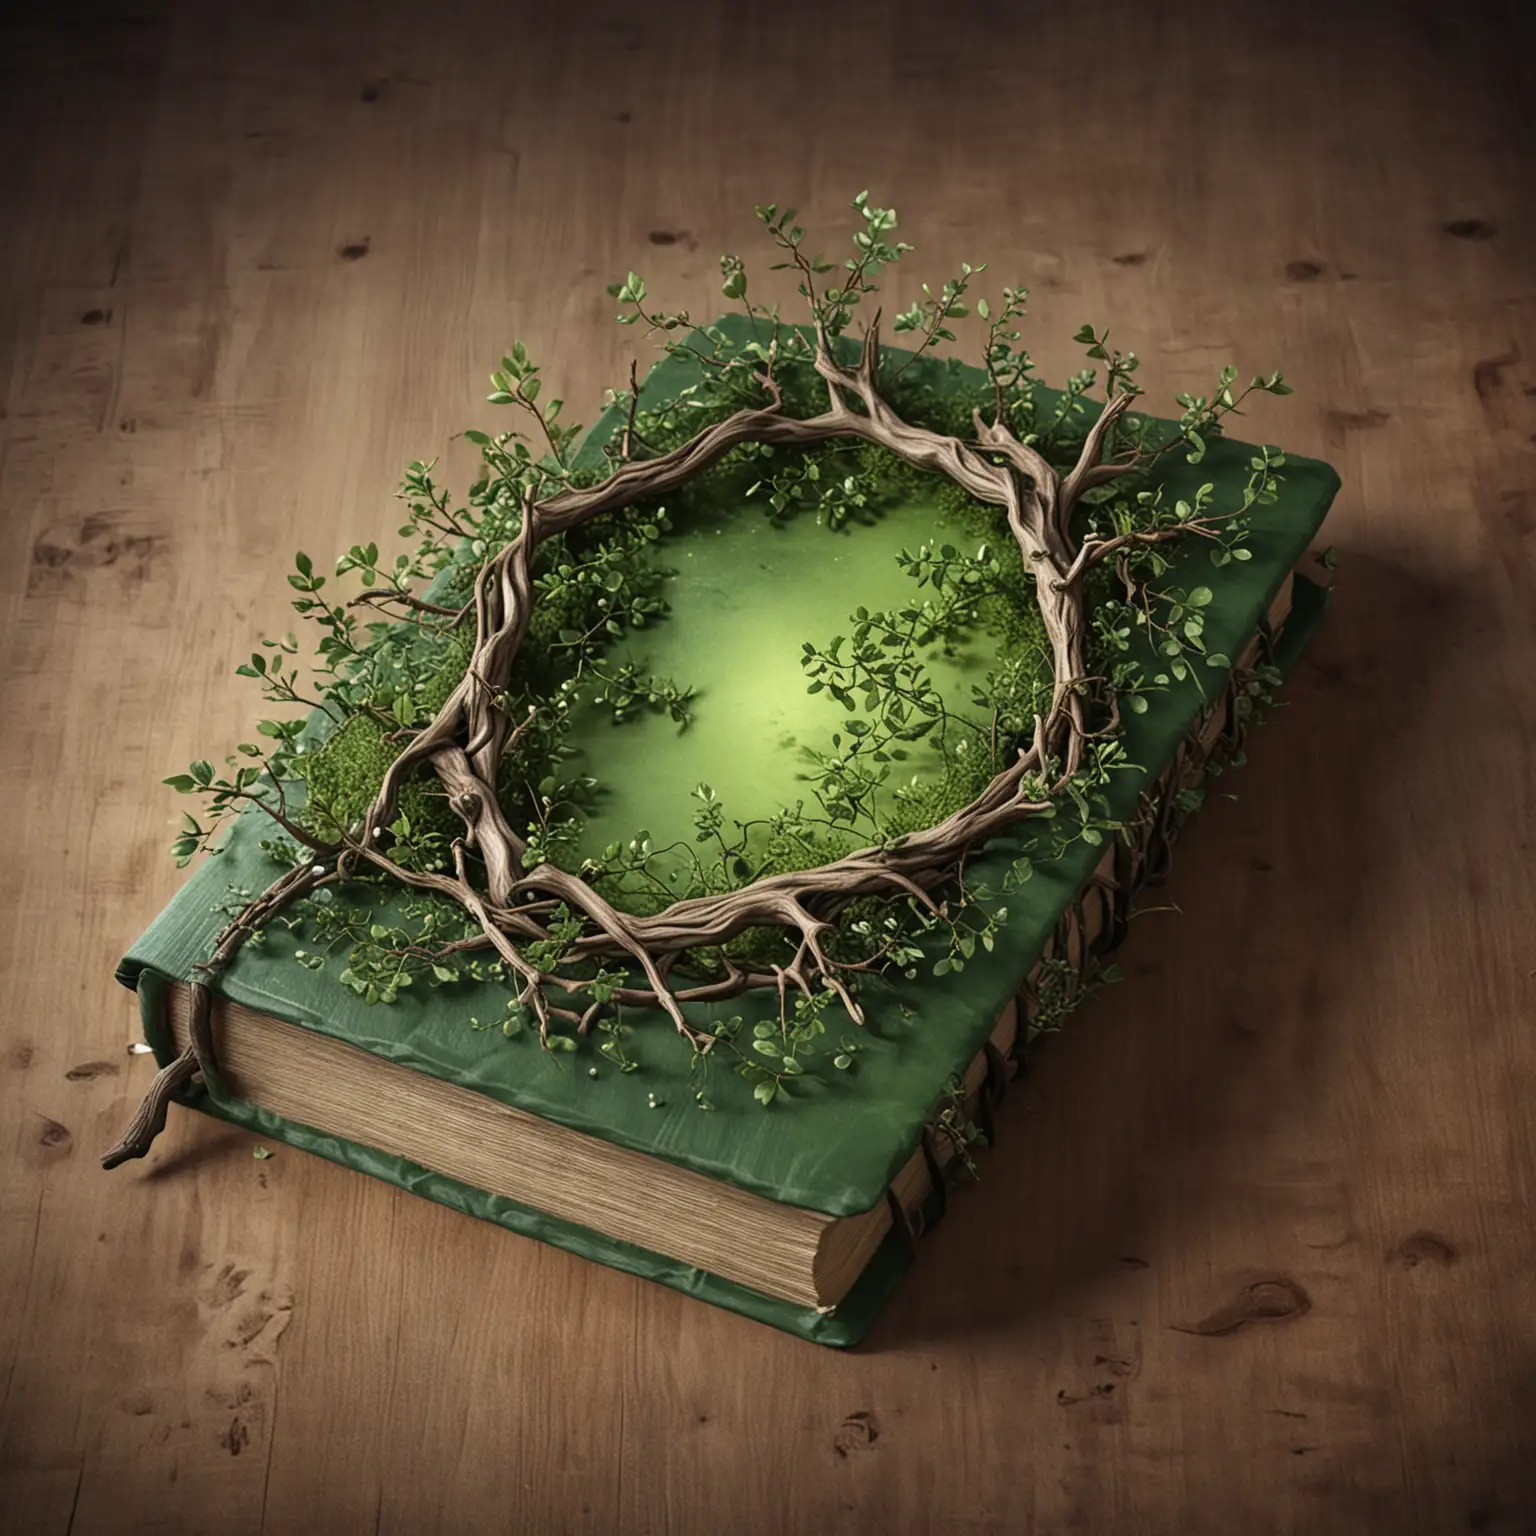 реалистичная магическая книга с деревянной-зеленой обложкой и веточками растущими с книги